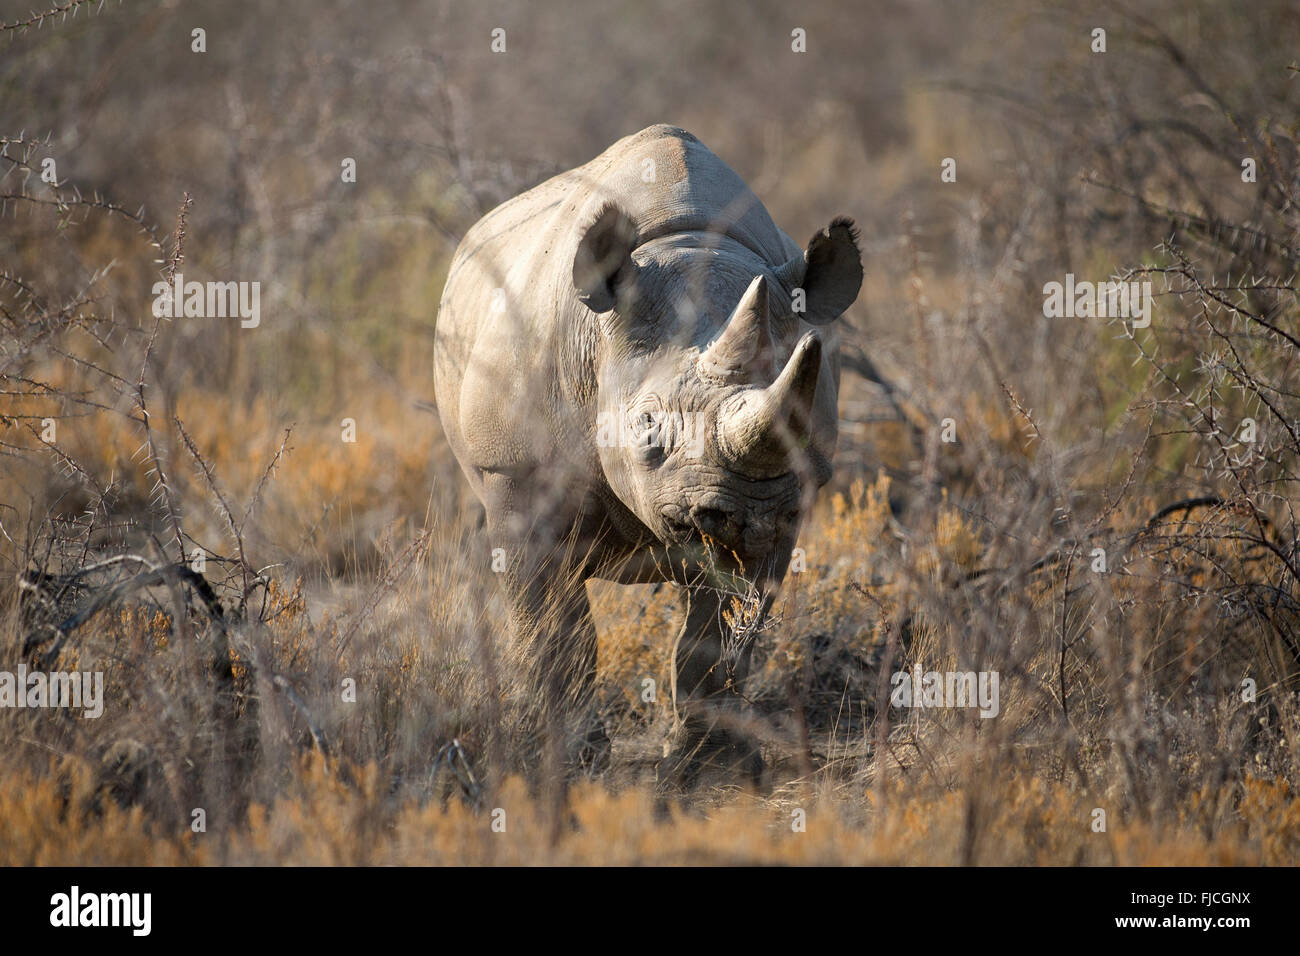 Un rhinocéros noir Banque D'Images